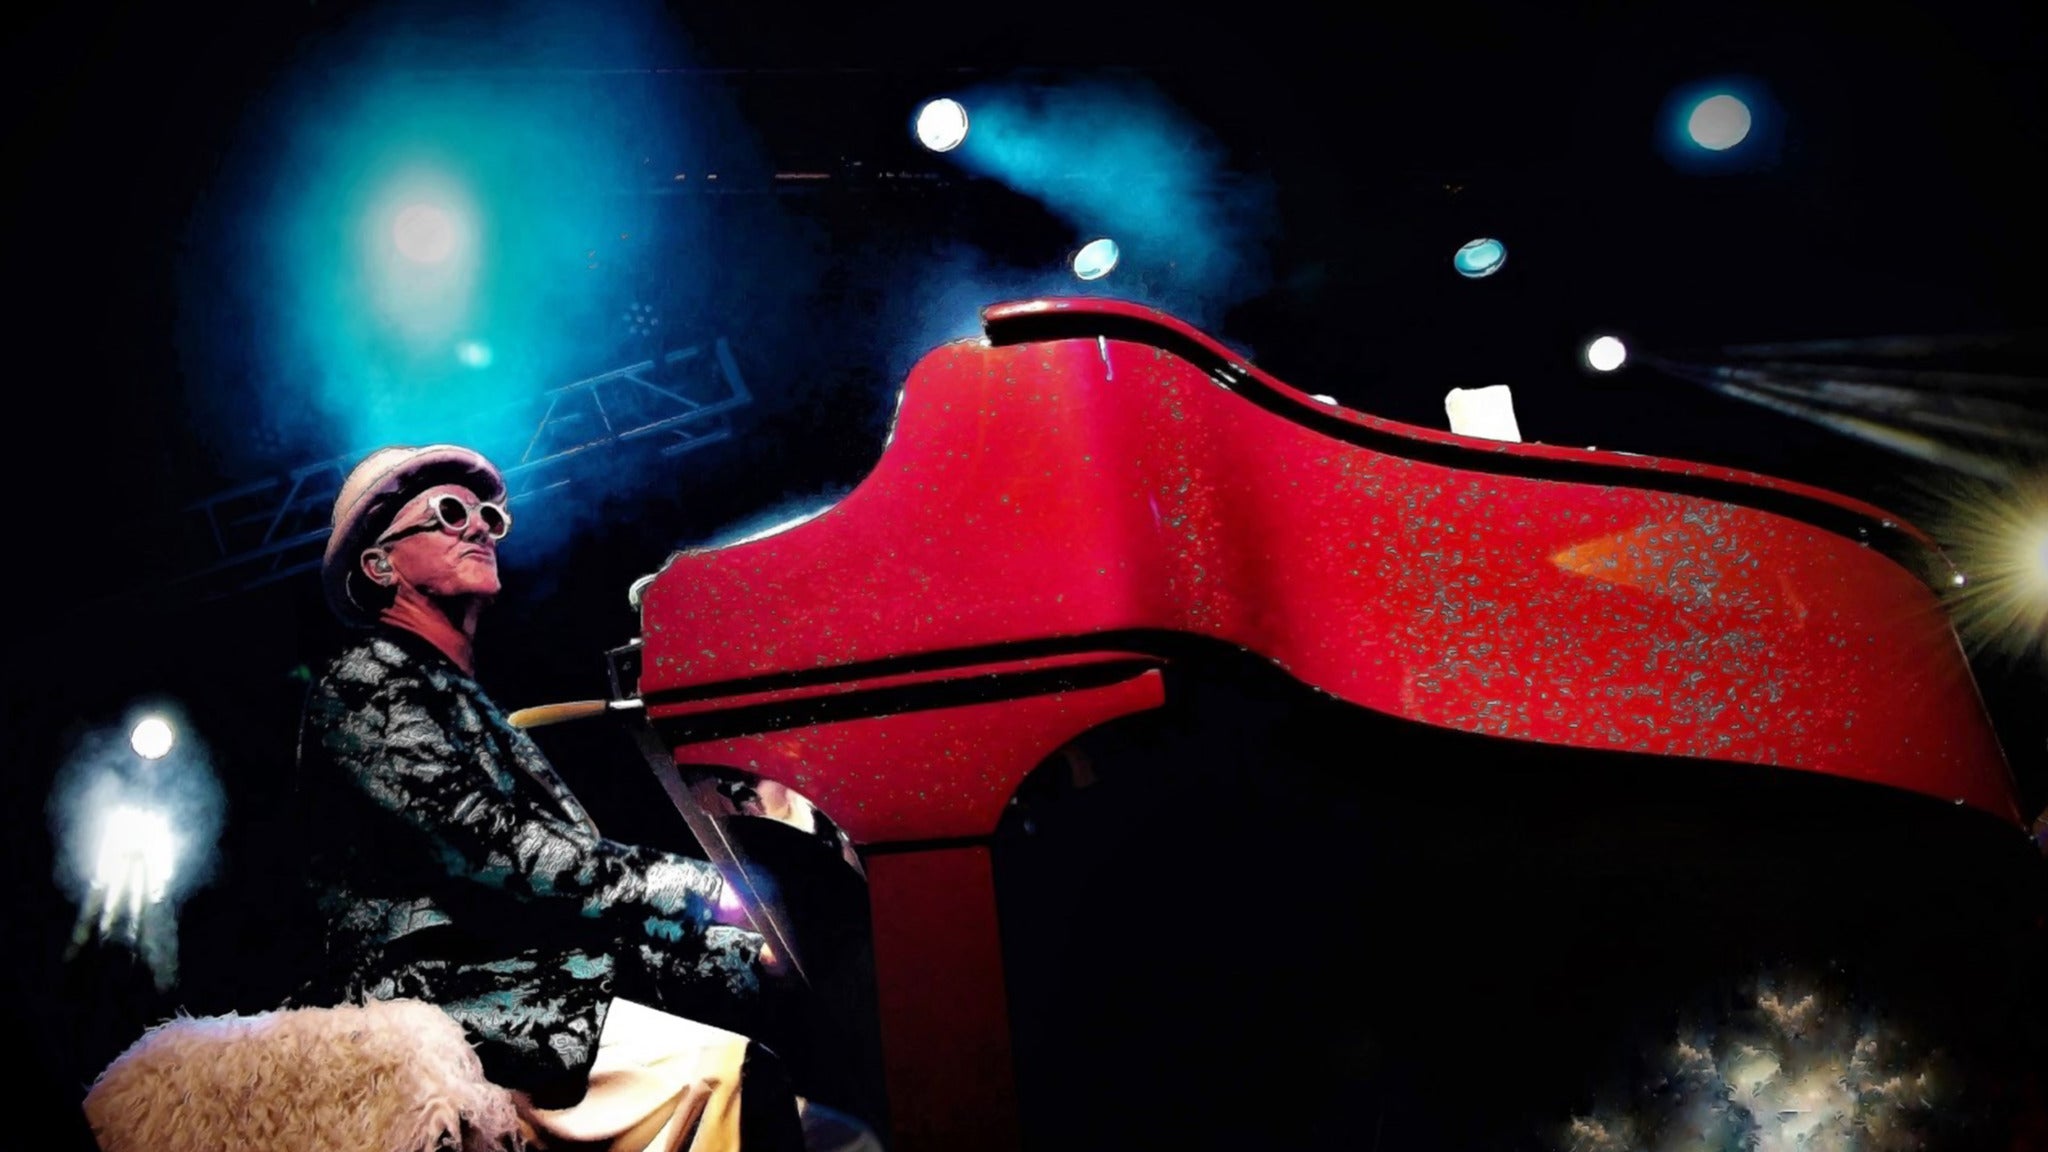 Elton Dan & the Rocket Band at Mesa Theatre & Club